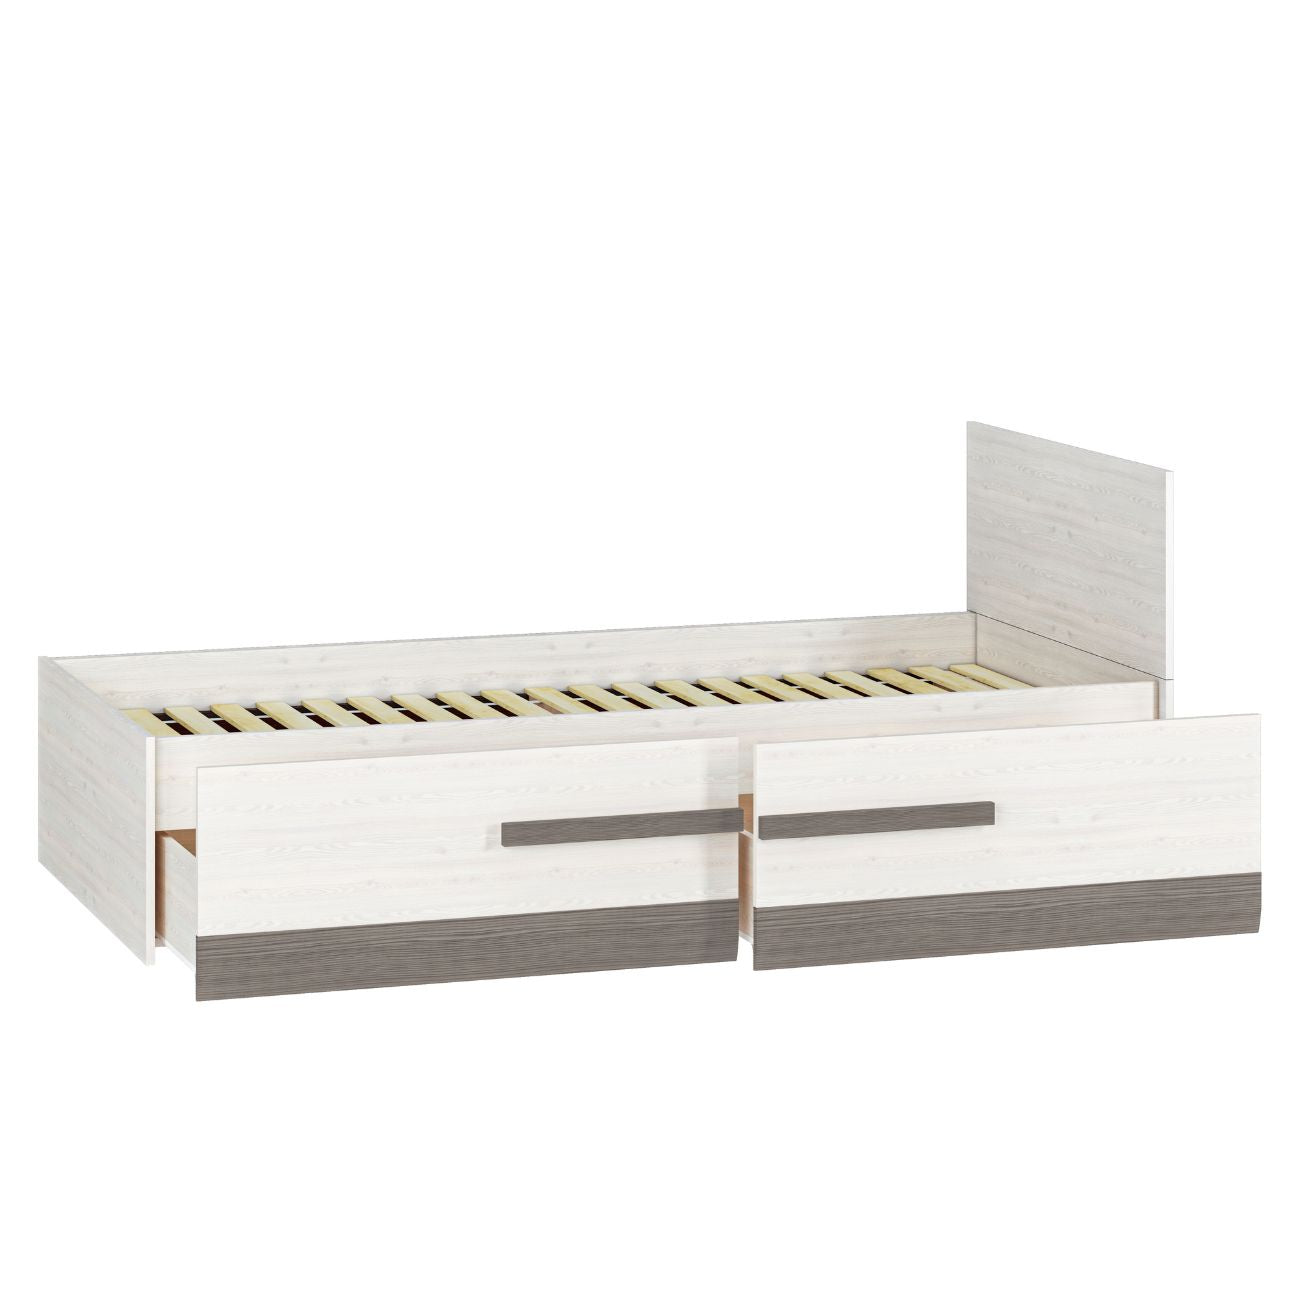 Zdjęcie przedstawiające nowoczesne łóżko jednoosobowe z wysuniętymi dwiema szufladami oraz stelażem drewnianym. 